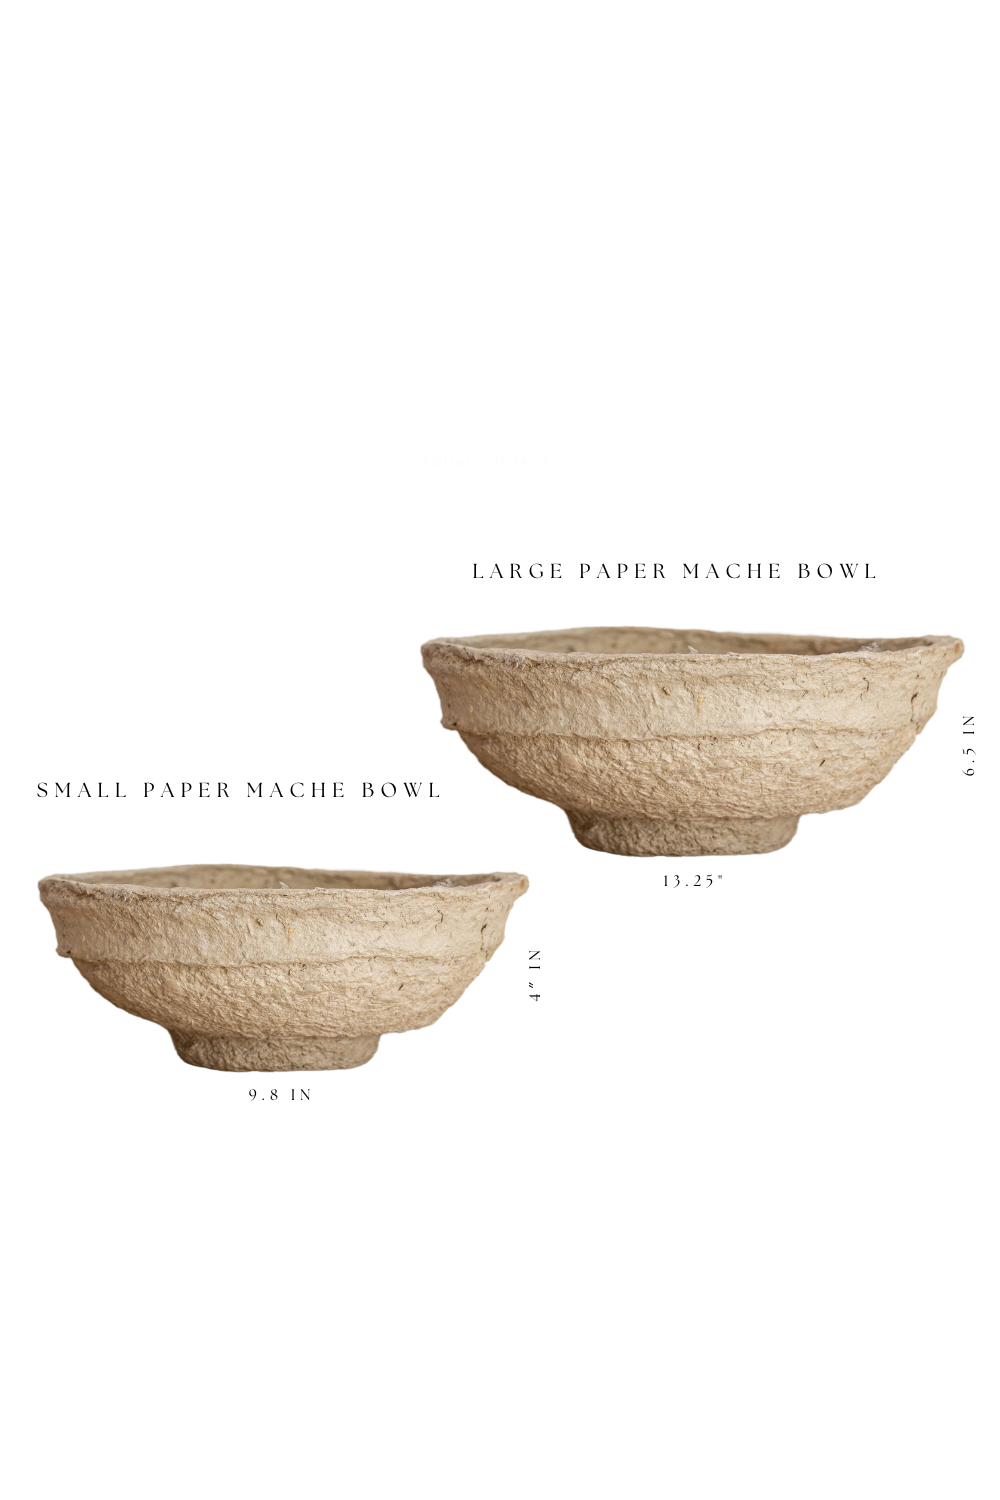 Paper Mache Bowls - Luxe B Co Vintage Home Decor Shop Luxe B Co Instagram